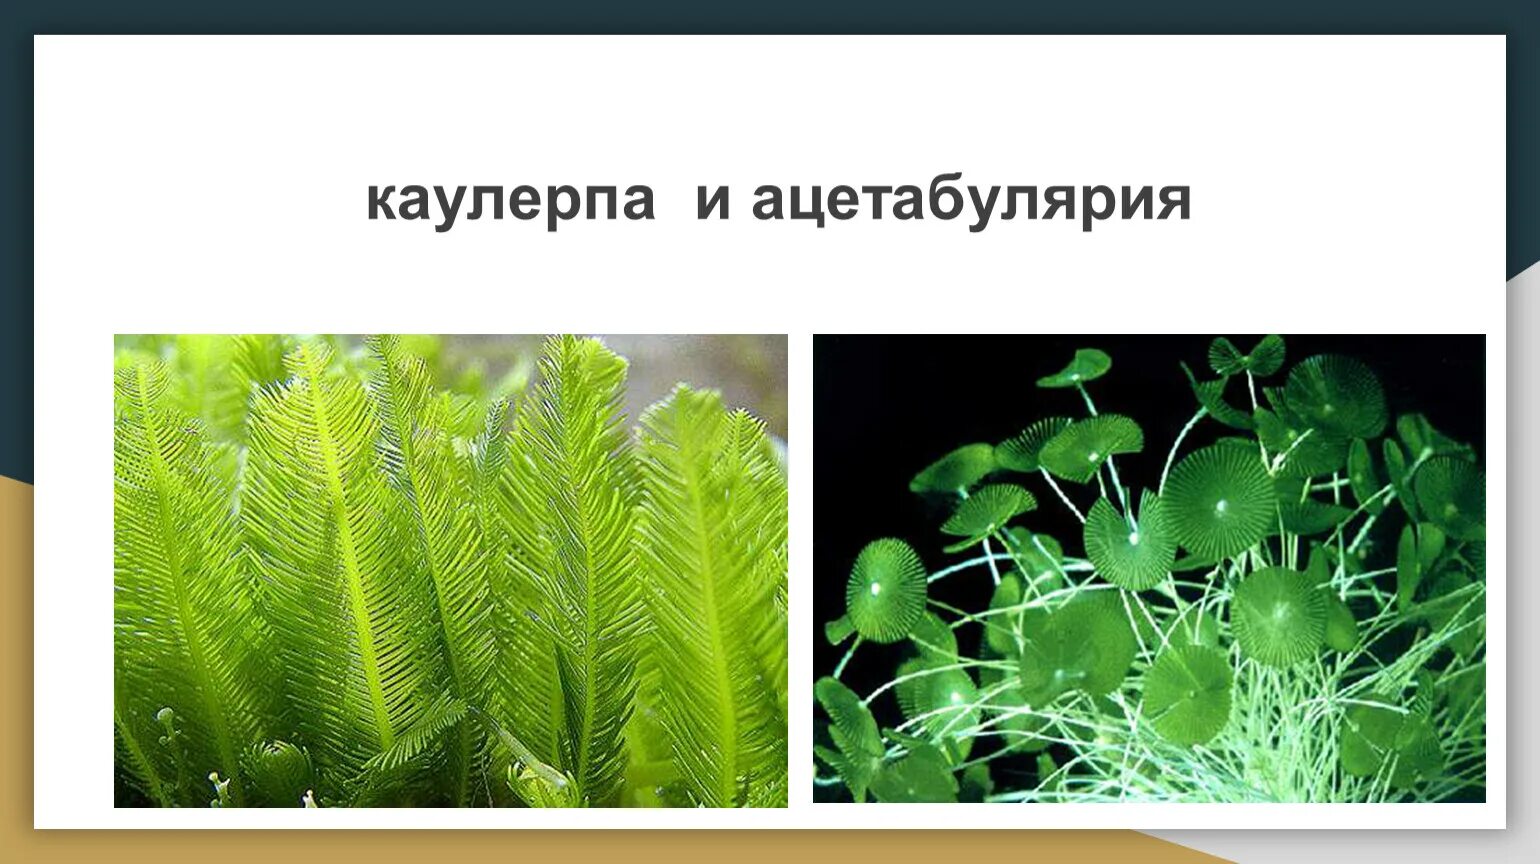 Какое растение относят к высшим споровым растениям. Споровые водоросли. Споровые растения. Ацетабулярия. Каулерпа.